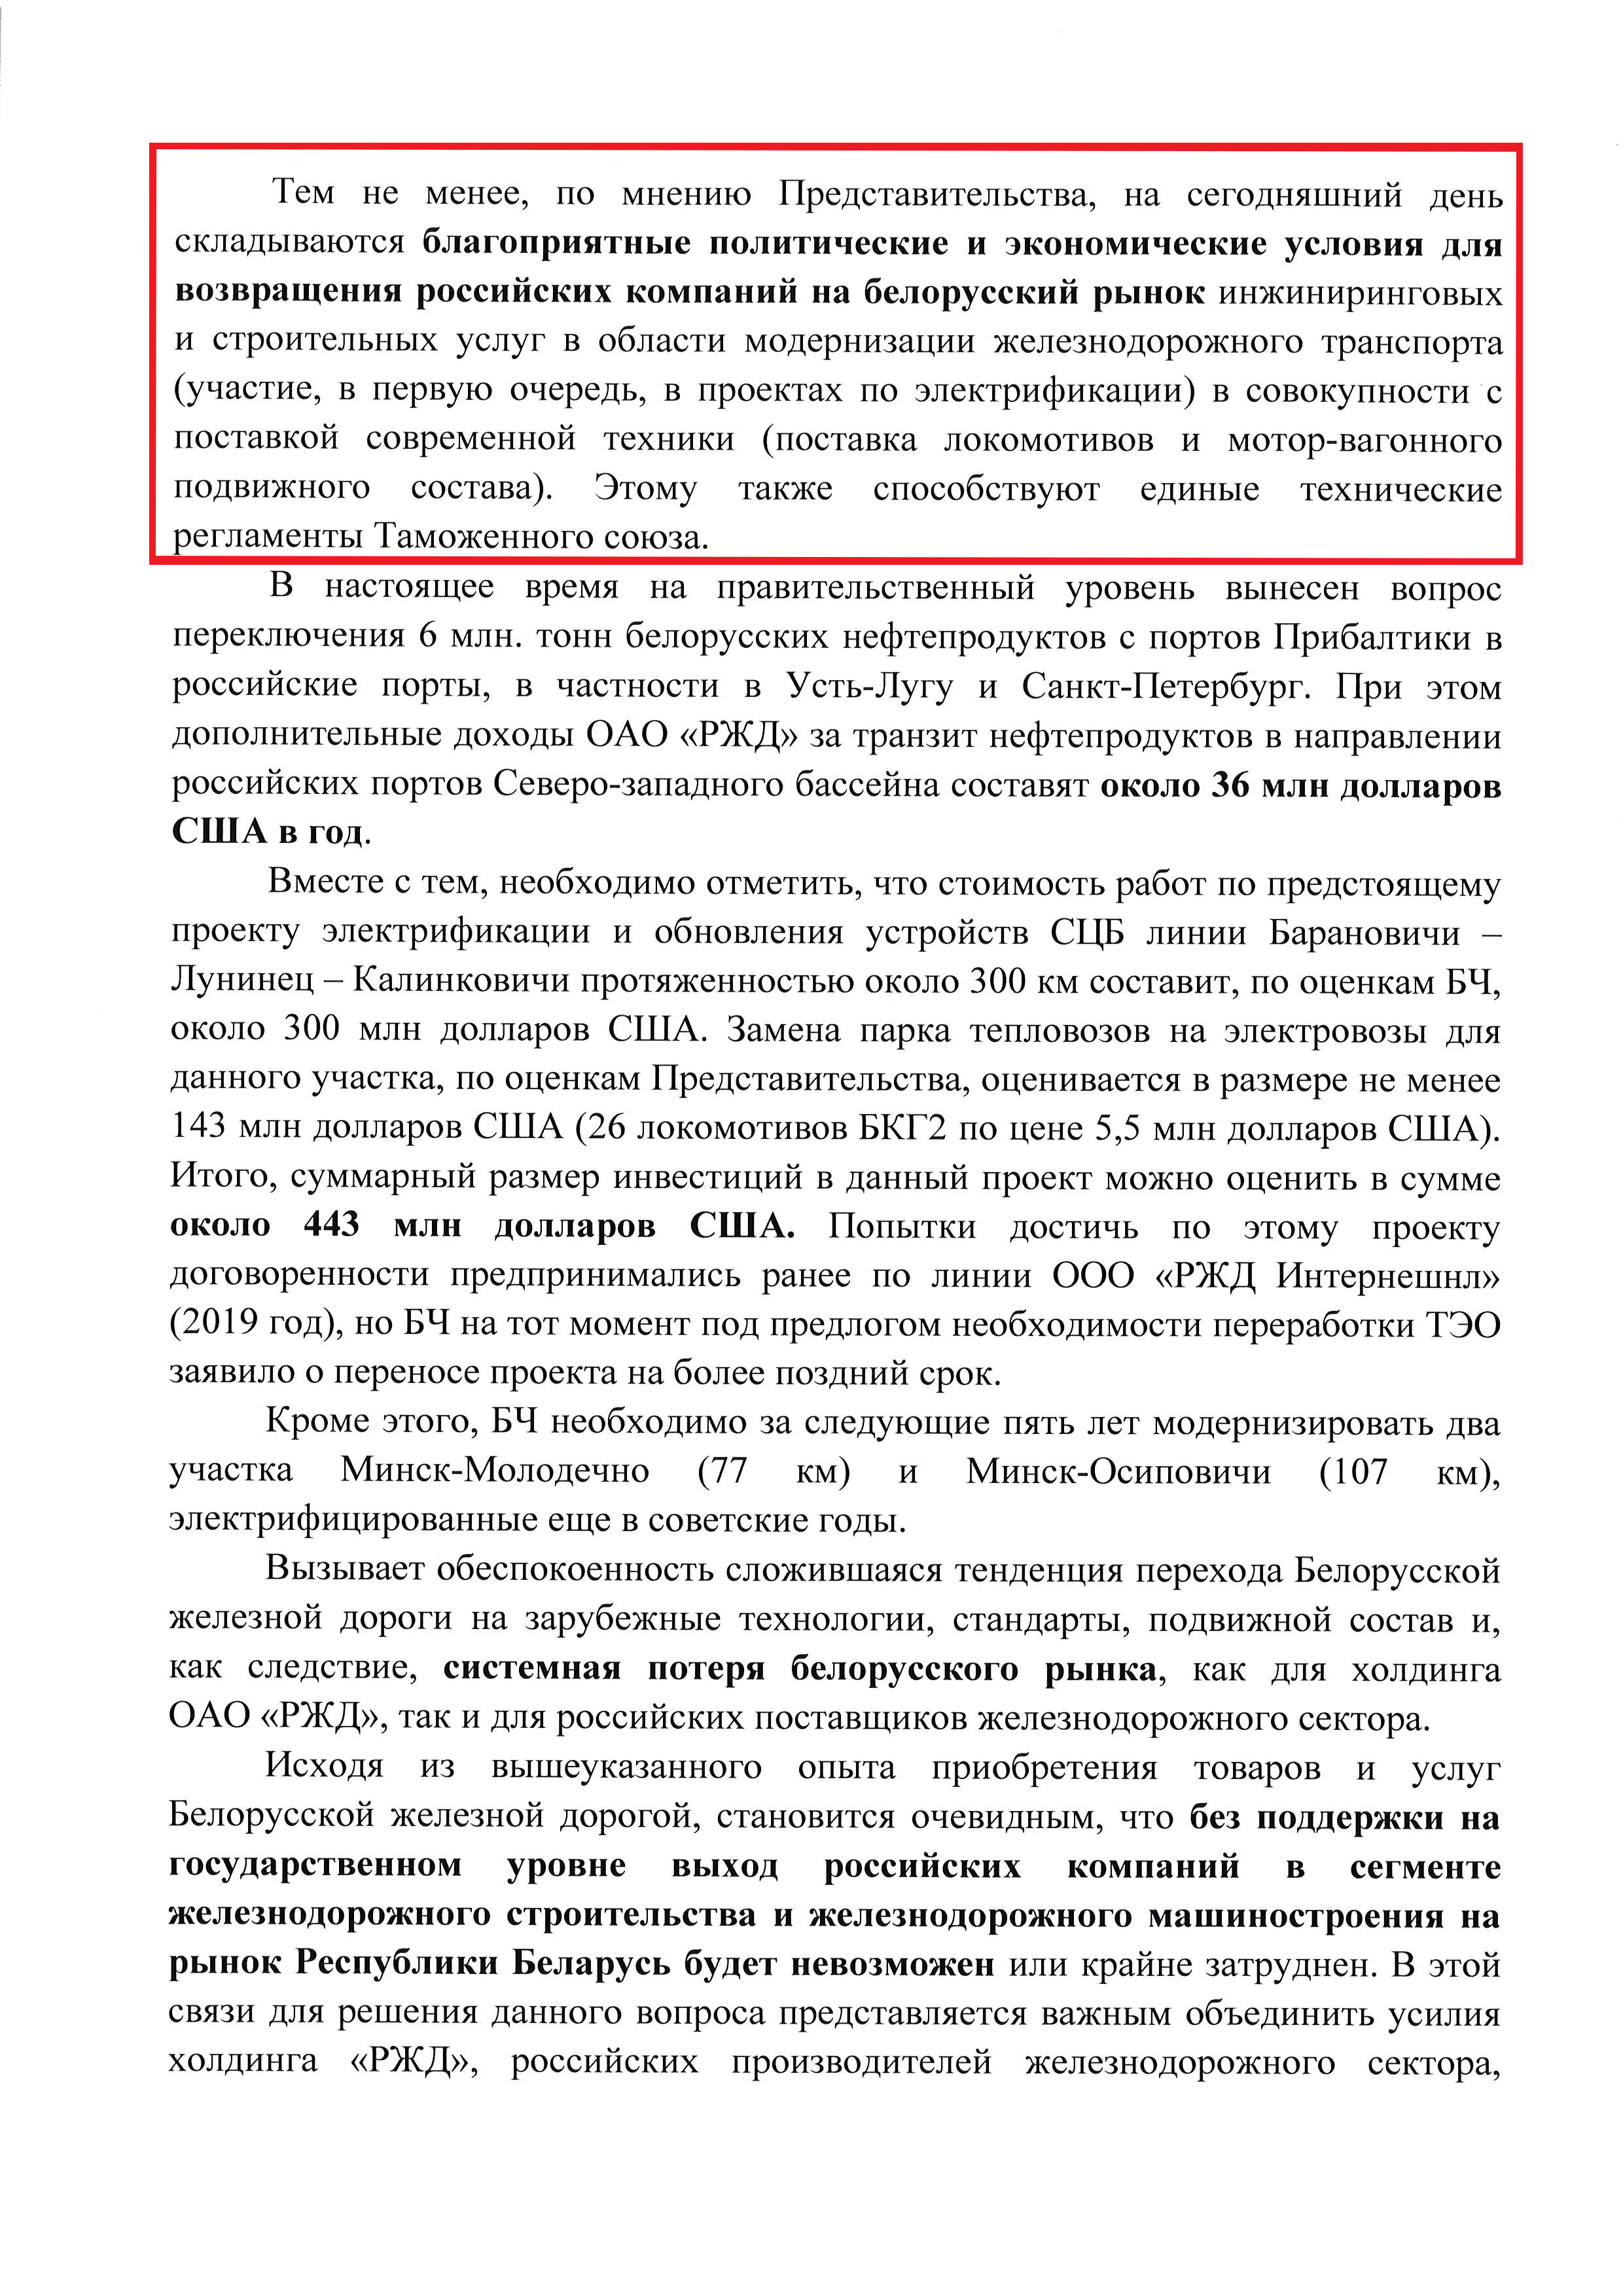 Письмо представительства РЖД о необходимости продвижения своей продукции и услуг в РБ (Страница 4)